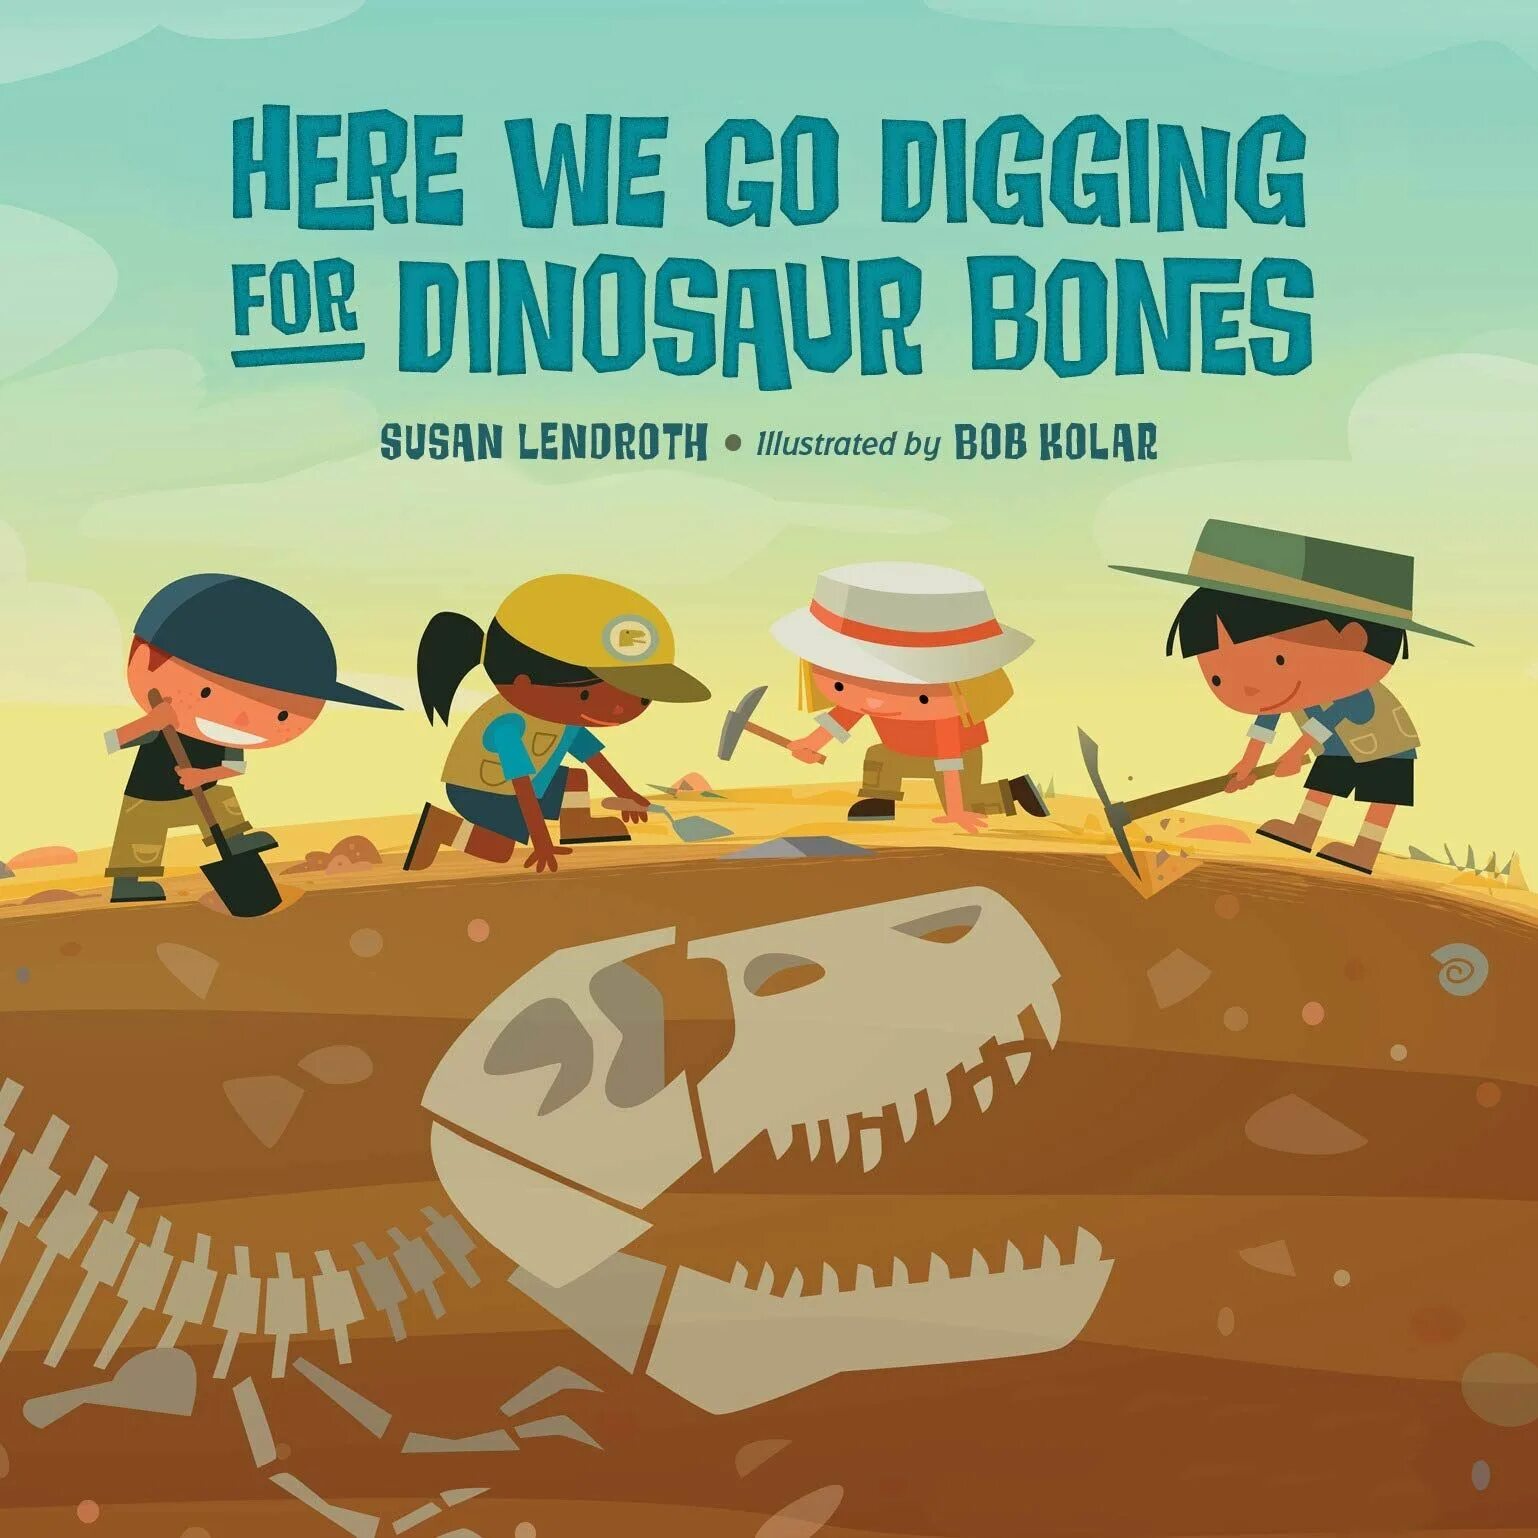 Go digging. Dig for Dinosaur Bones. Dig for Dinosaur Bones транскрипция. Picture dig for Dinosaur Bones.